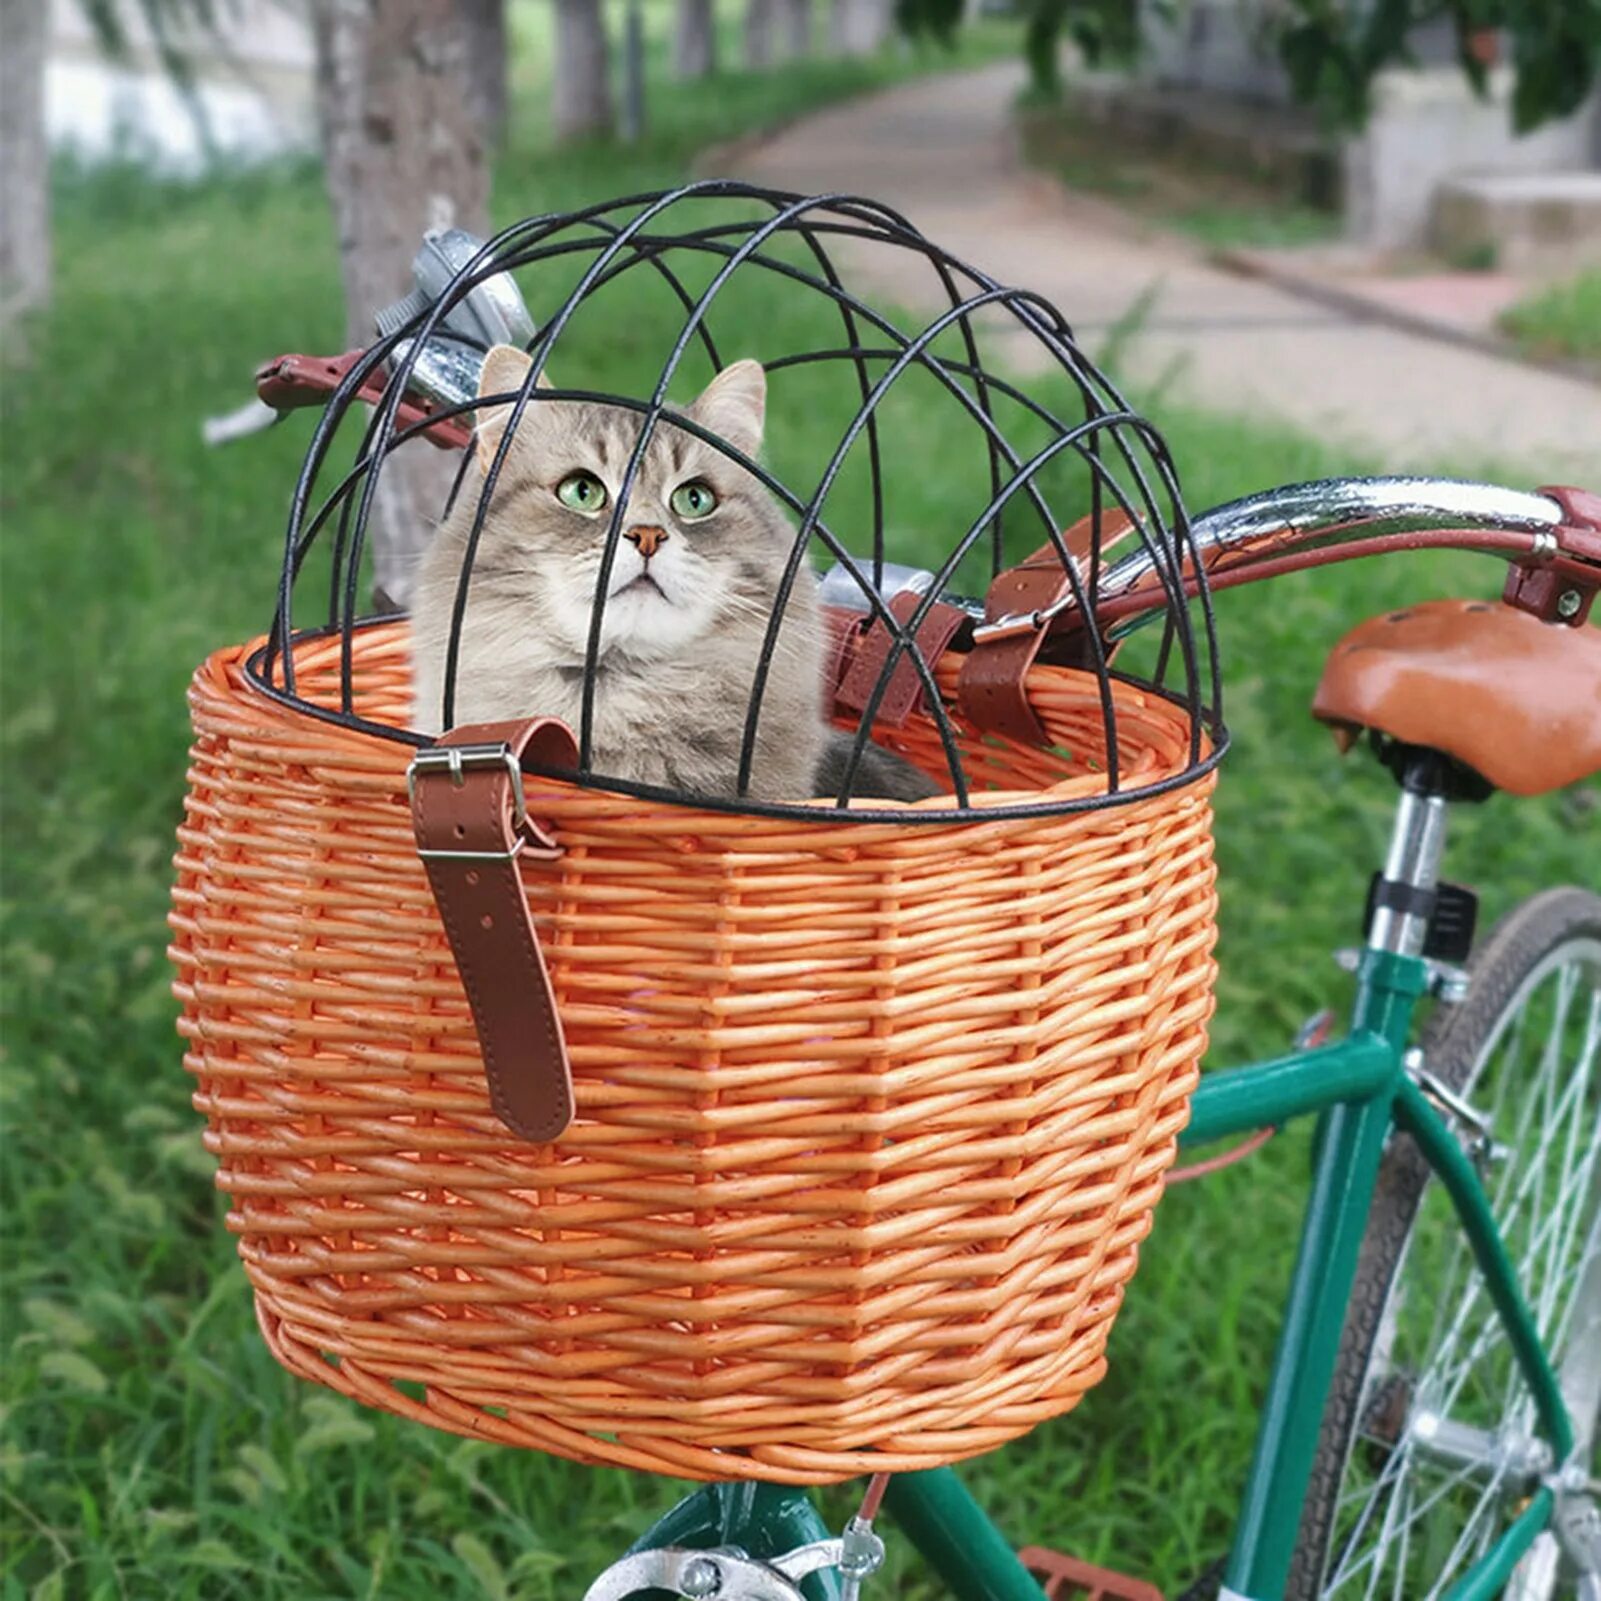 Велосипедная корзина для животных. Плетеная корзина для животных велосипед. Корзинка для собаки на велосипед. Корзинка для кошки на велосипед.